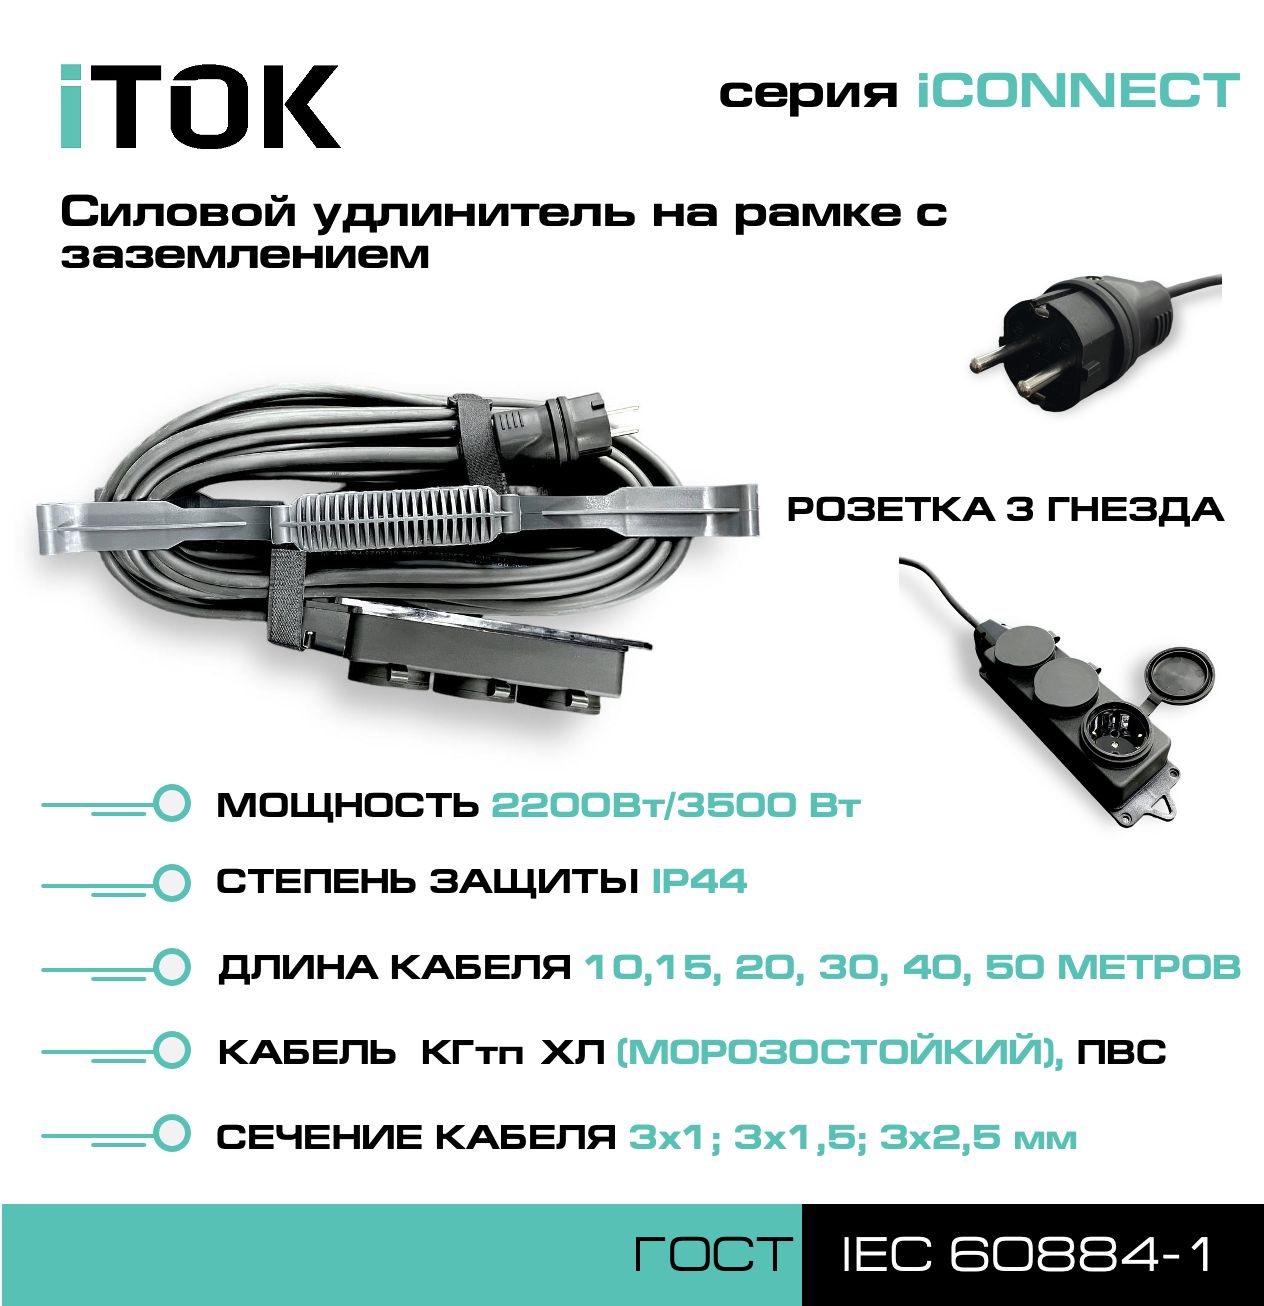 Удлинитель на рамке с заземлением серии iTOK iCONNECT ПВС 3х2,5 мм 3 гнезда IP44 15 м фигурный пазл в рамке